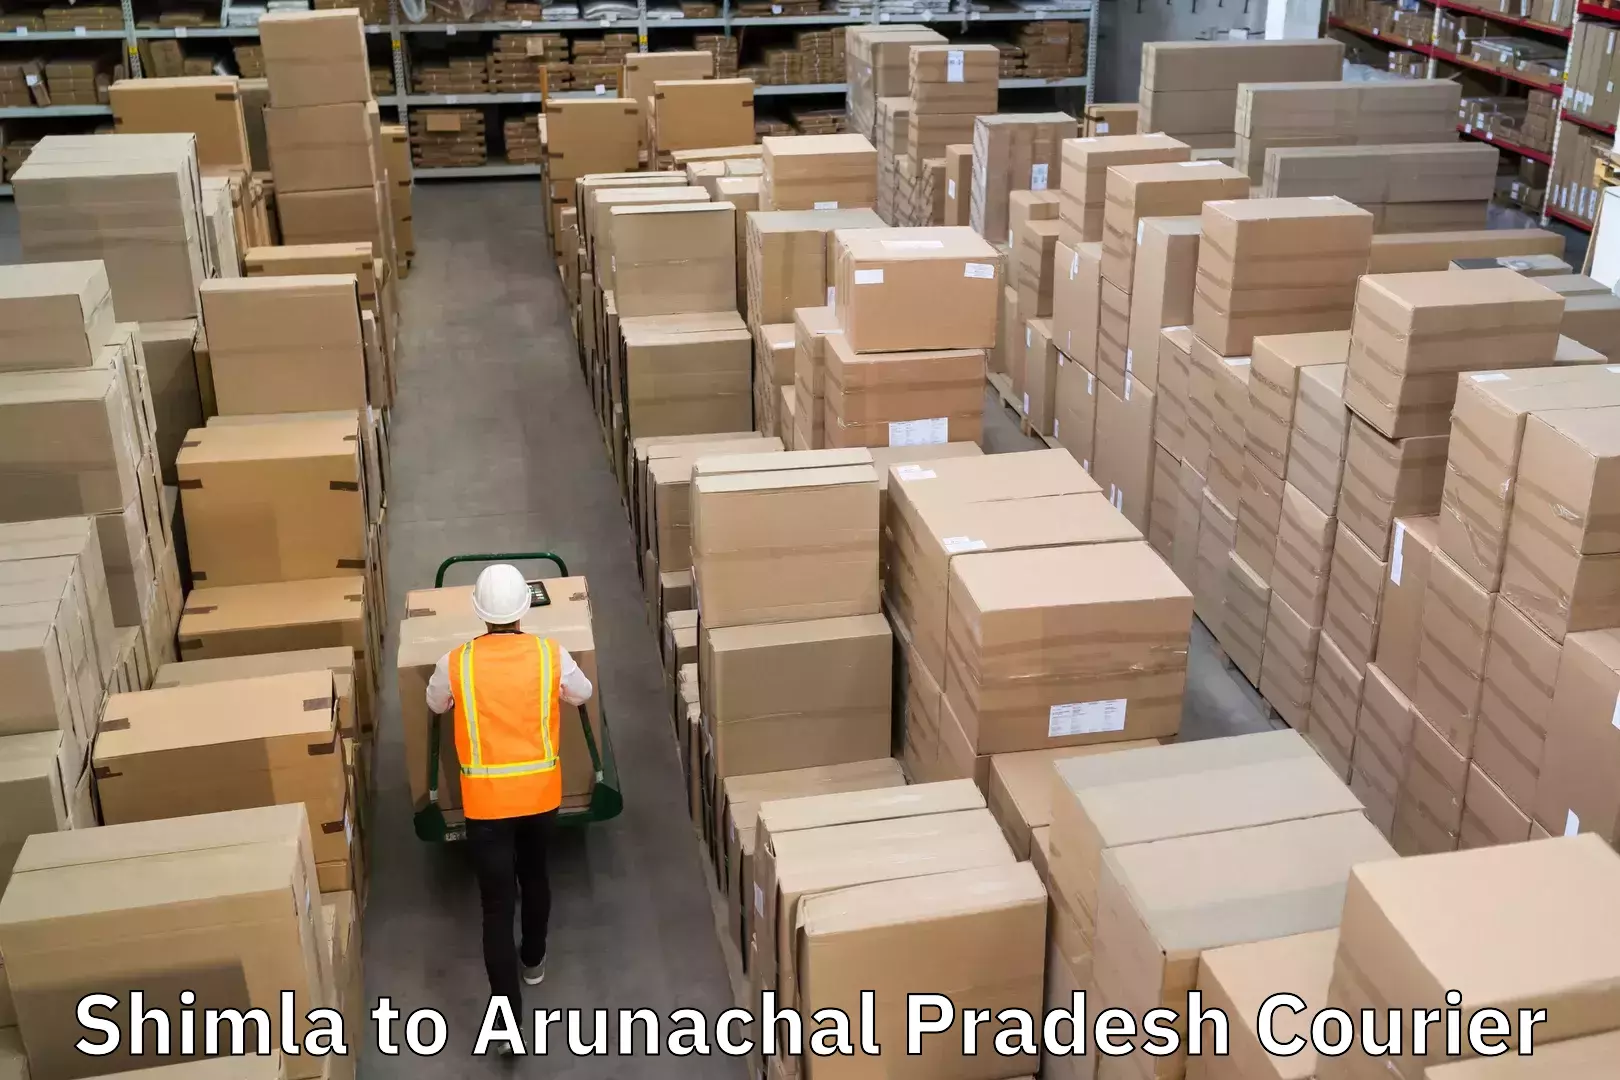 Courier dispatch services Shimla to Arunachal Pradesh